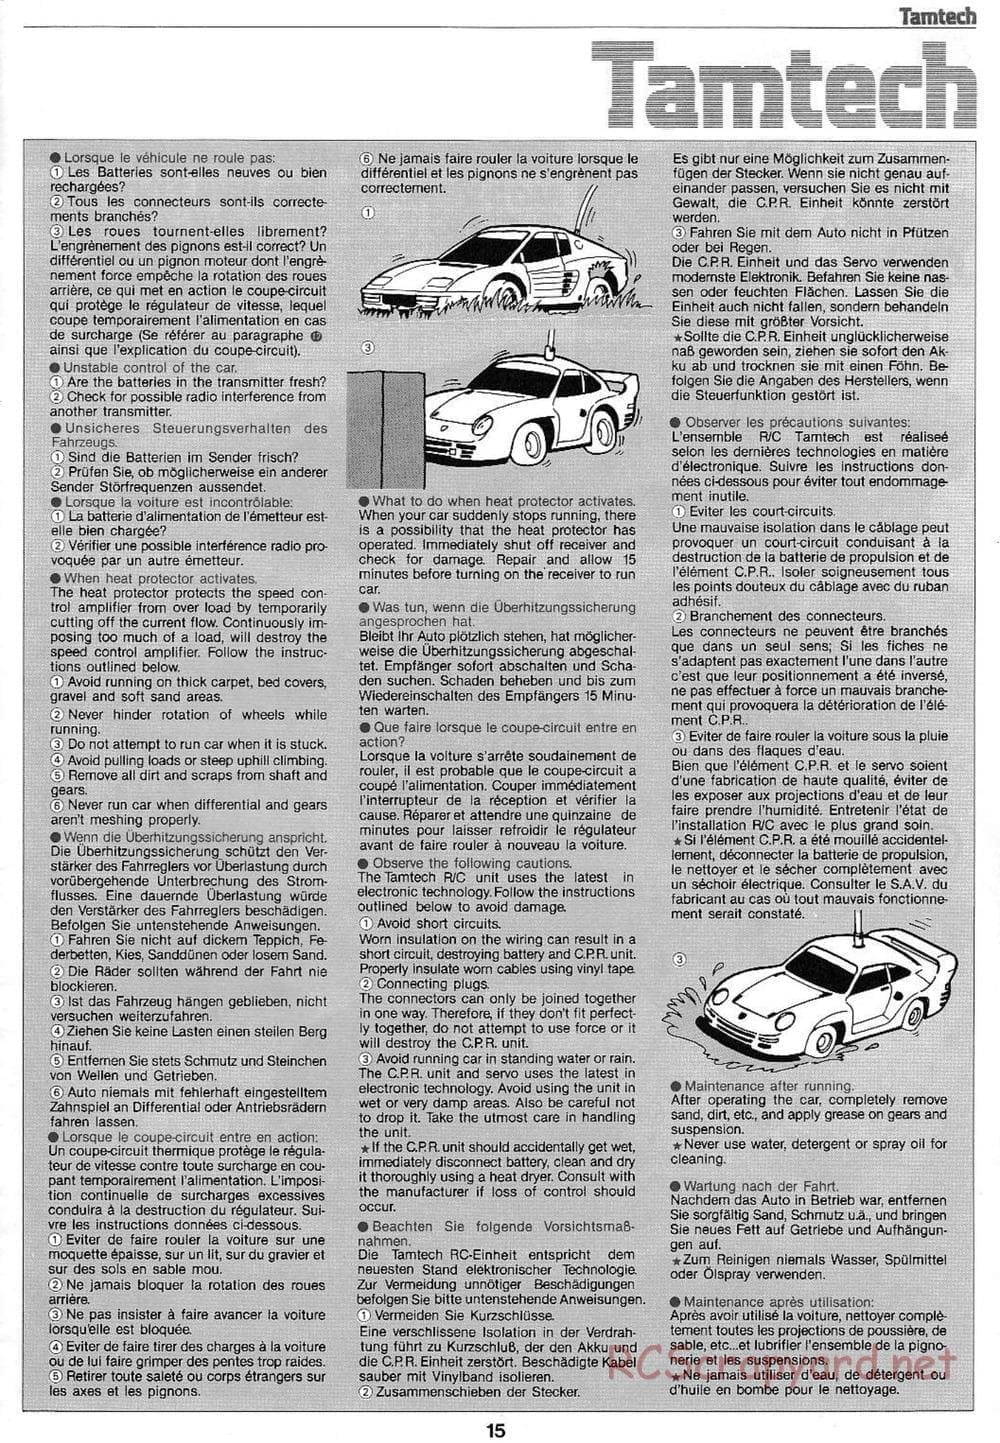 Tamiya - Tamtech - Lamborghini Countach 5000 Chassis - Manual - Page 15